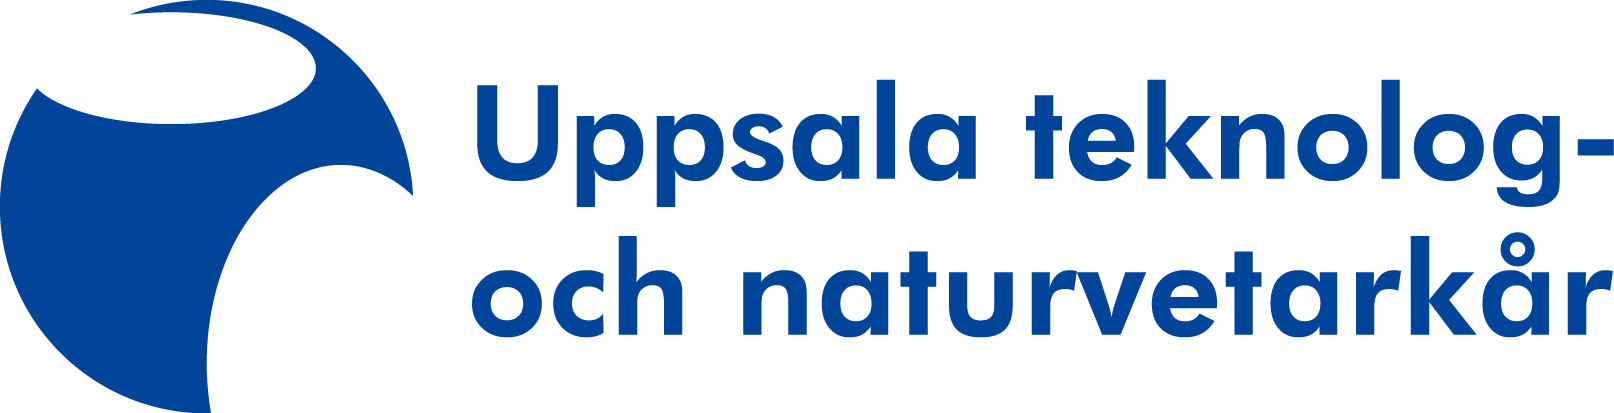 Uppsala teknolog- och naturvetarkår